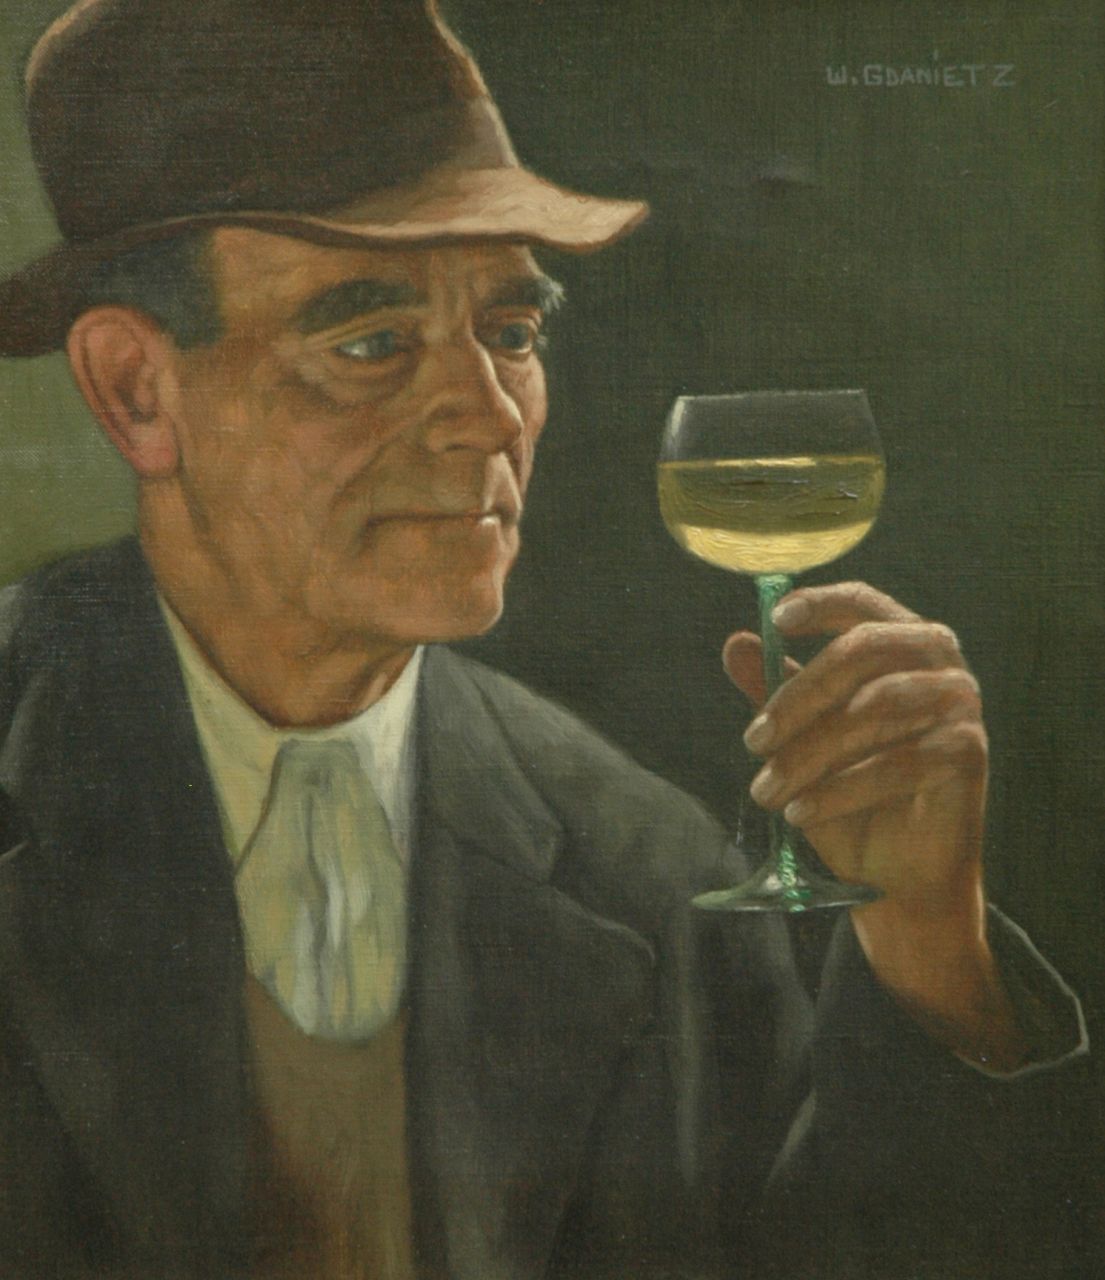 Gdanietz W.  | Wilhelm Gdanietz, The good judge of wine, Öl auf Leinwand 46,6 x 40,7 cm, signed u.r.